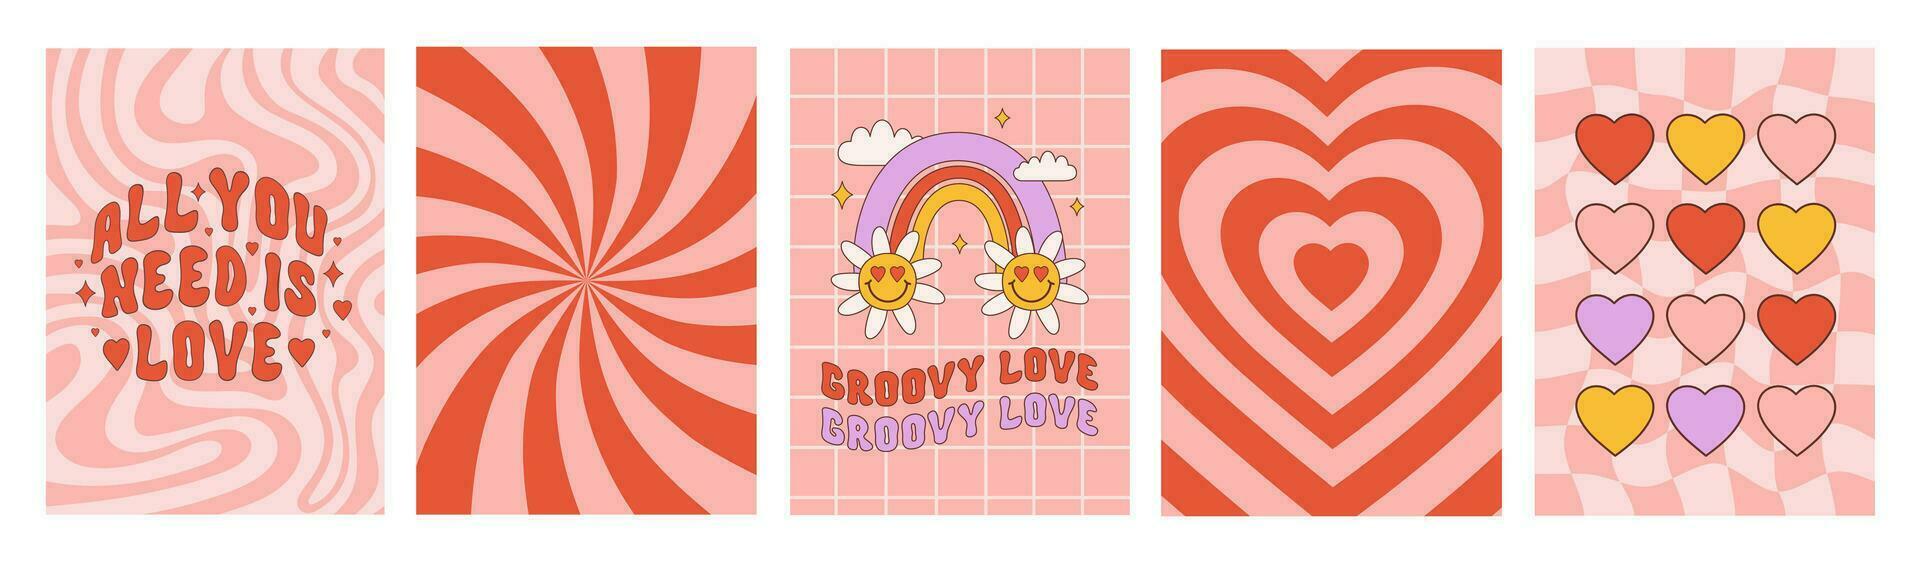 romantisch retro groovy reeks achtergronden in stijl jaren 60, jaren 70. modieus vector illustratie. rood en roze kleuren